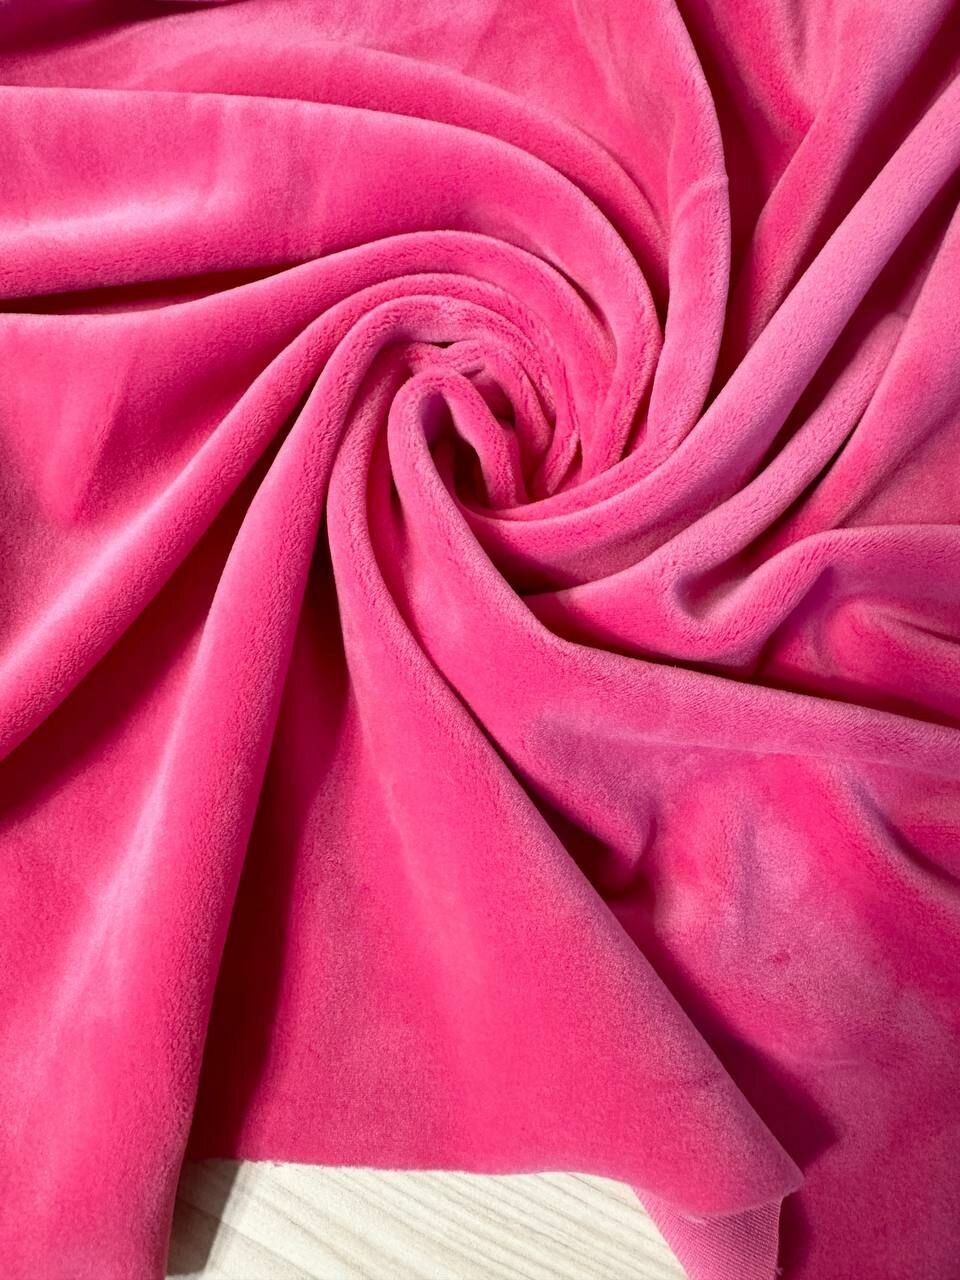 1м. Велюр односторонний. Велюровая ткань для шитья и рукоделия. Цвет розовый. Отрез 200*140см